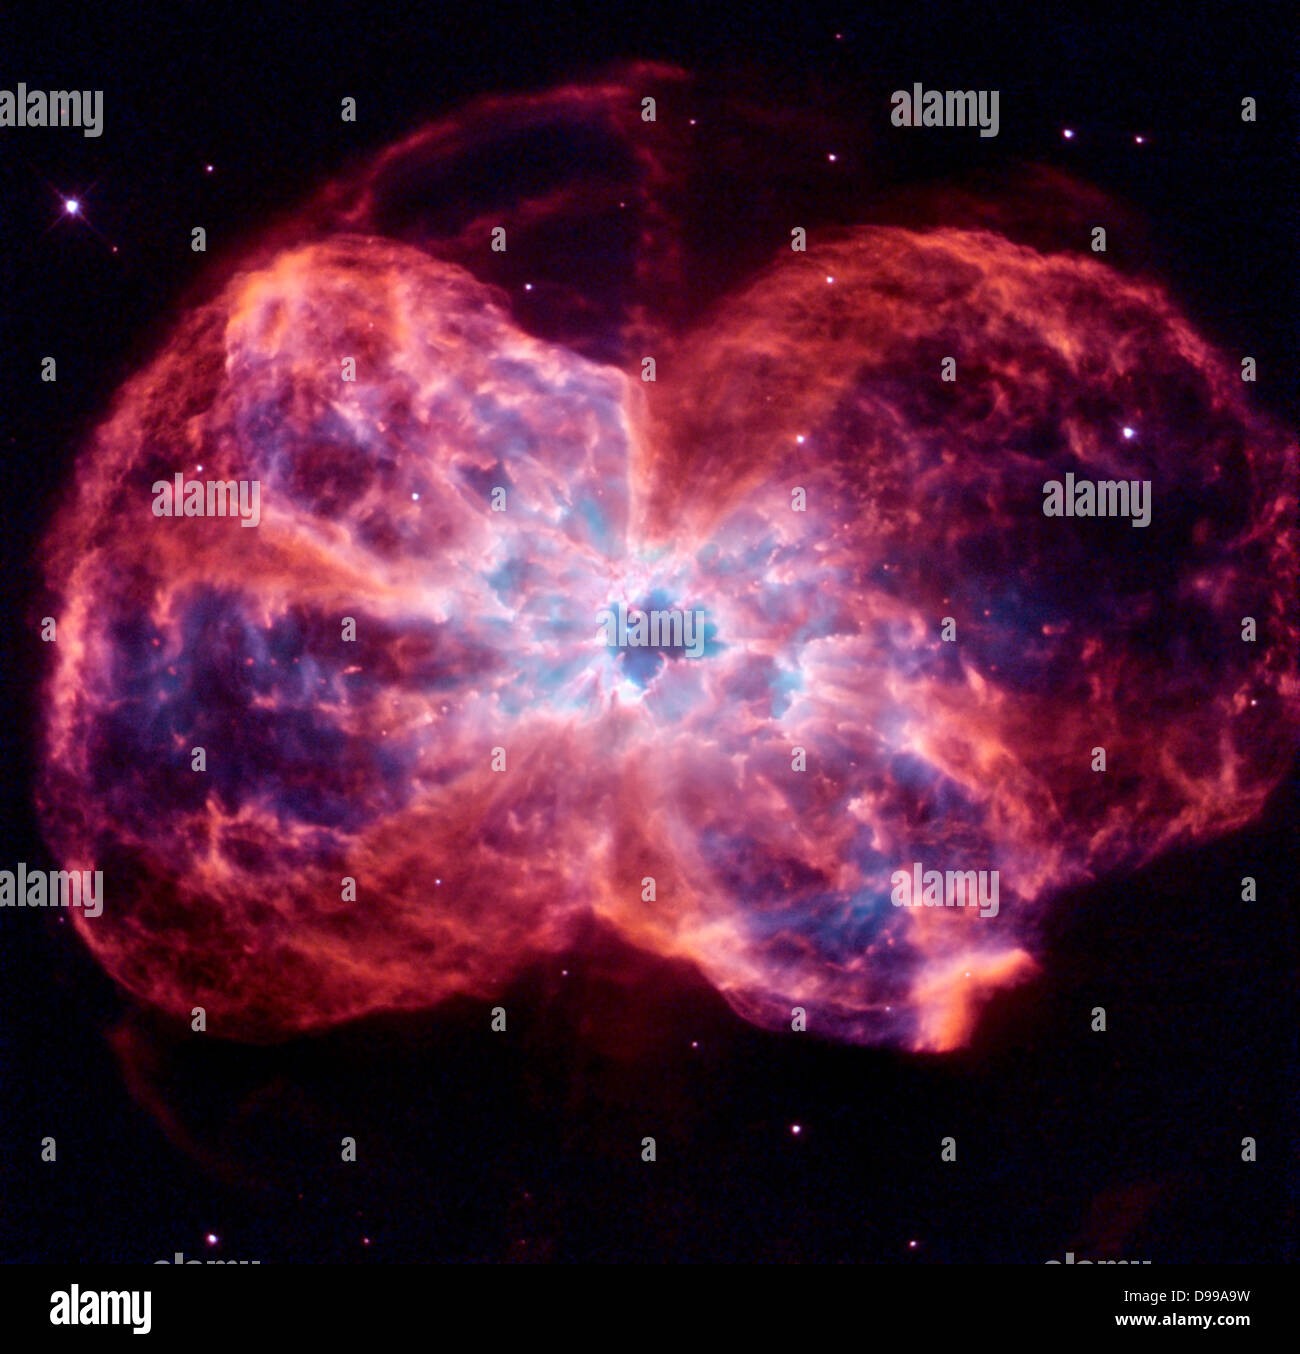 Der Stern ist das Ende ihrer Lebensdauer, indem Sie seine äußeren Schichten, die einen Kokon um die Sterne verbleibenden Kern geformt. Uv-Licht aus dem sterbenden Stern macht das Material zum Glühen. Die Ausgebrannten Stern, ein Weißer Zwerg genannt wird, ist der weiße Punkt in der Mitte. Hubble Space Telescope (HST). Stockfoto